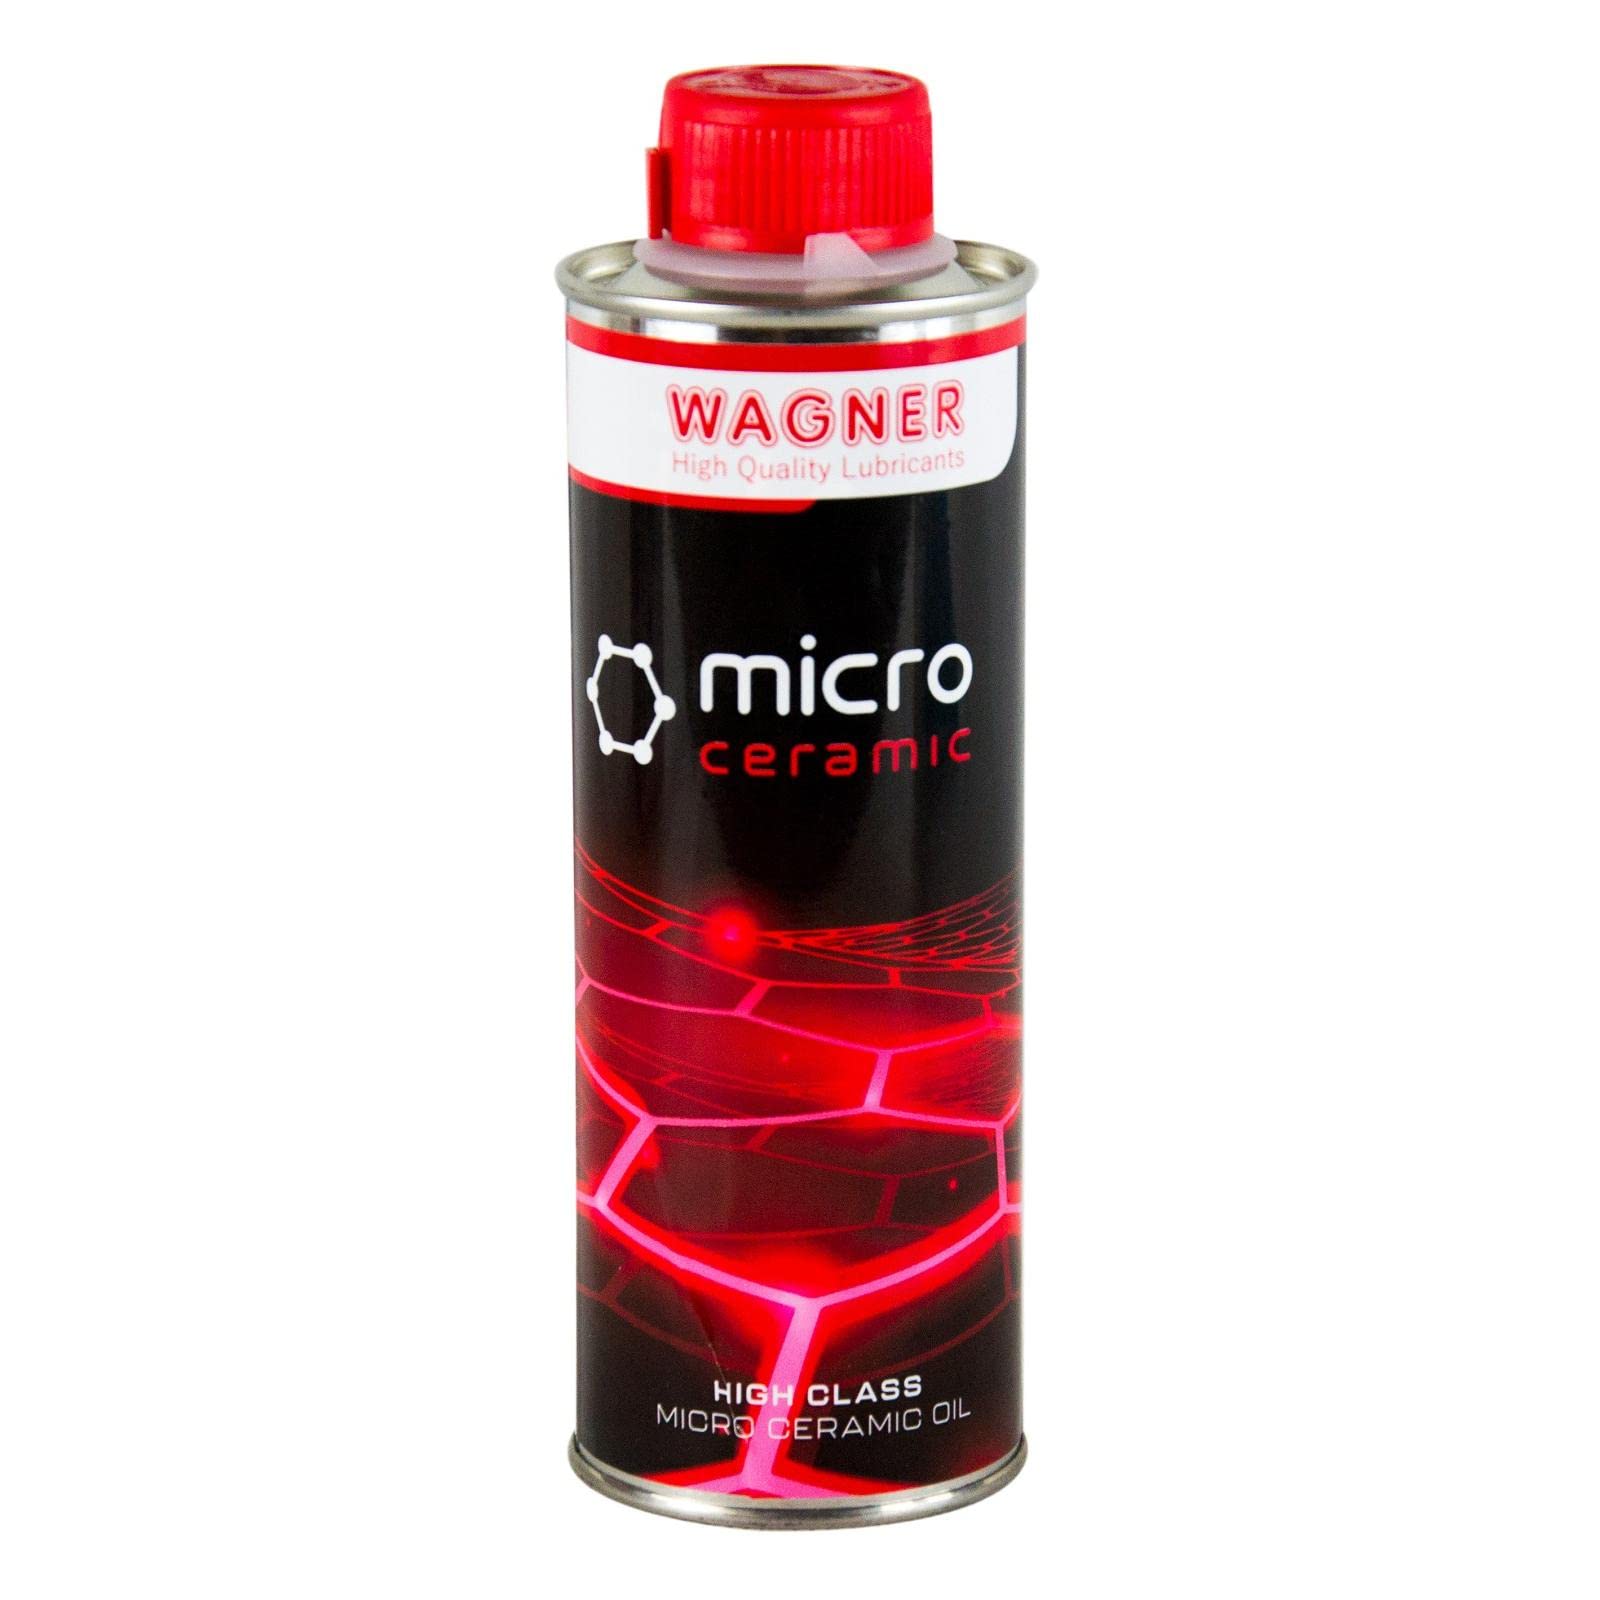 WAGNER Universal Micro-Ceramic Oil Schmierölzusatz - 013300 - 300 ml von WAGNER Spezialschmierstoffe GmbH & Co. KG